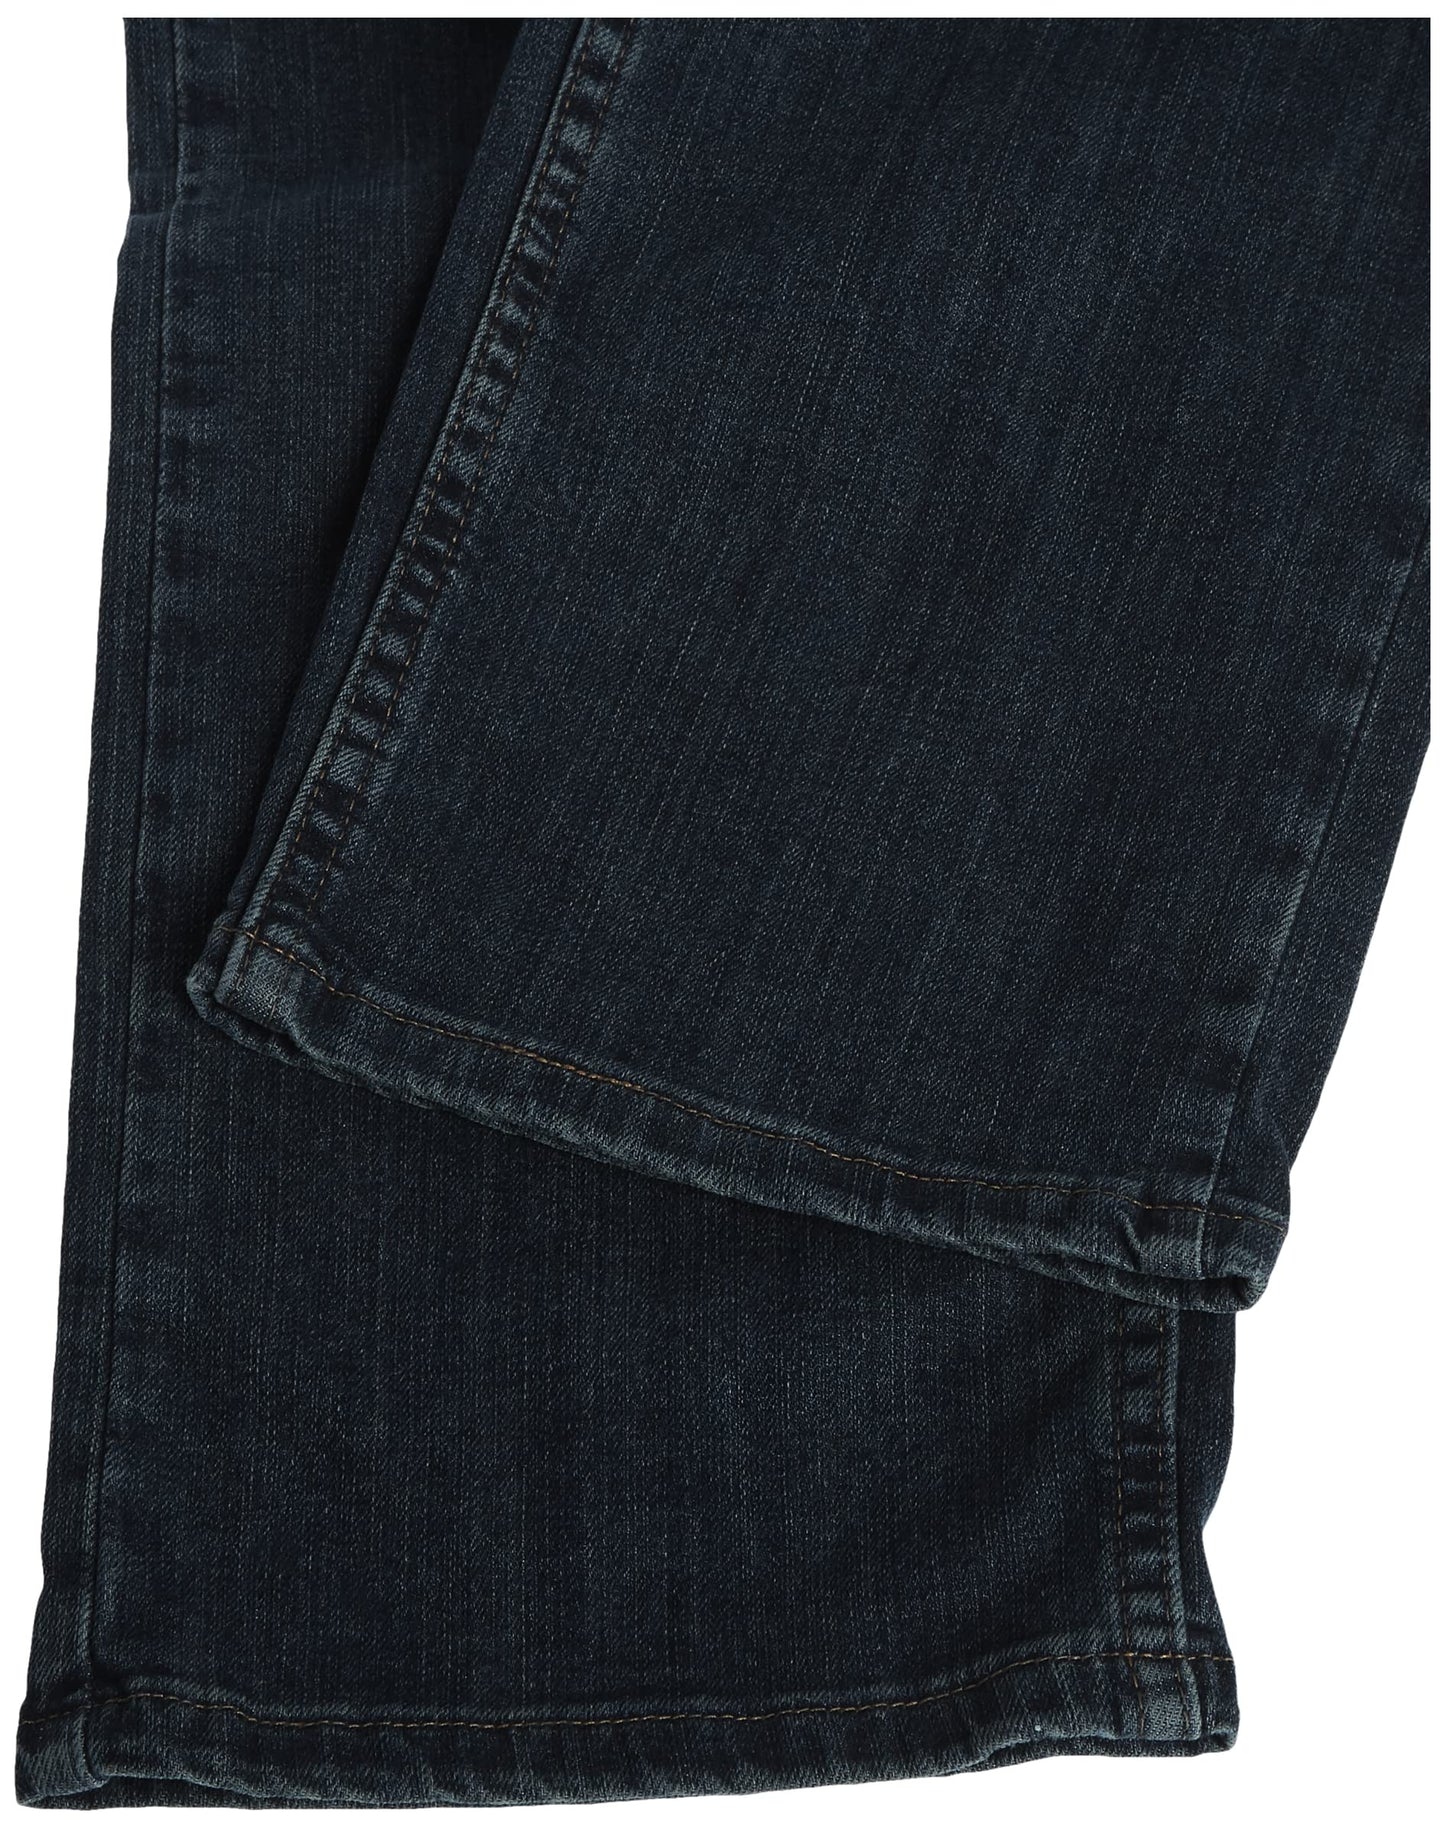 Wrangler Authentics Men's Big & Tall Classic 5-Pocket Regular Fit Jean, Twilight Flex, 38W x 38L